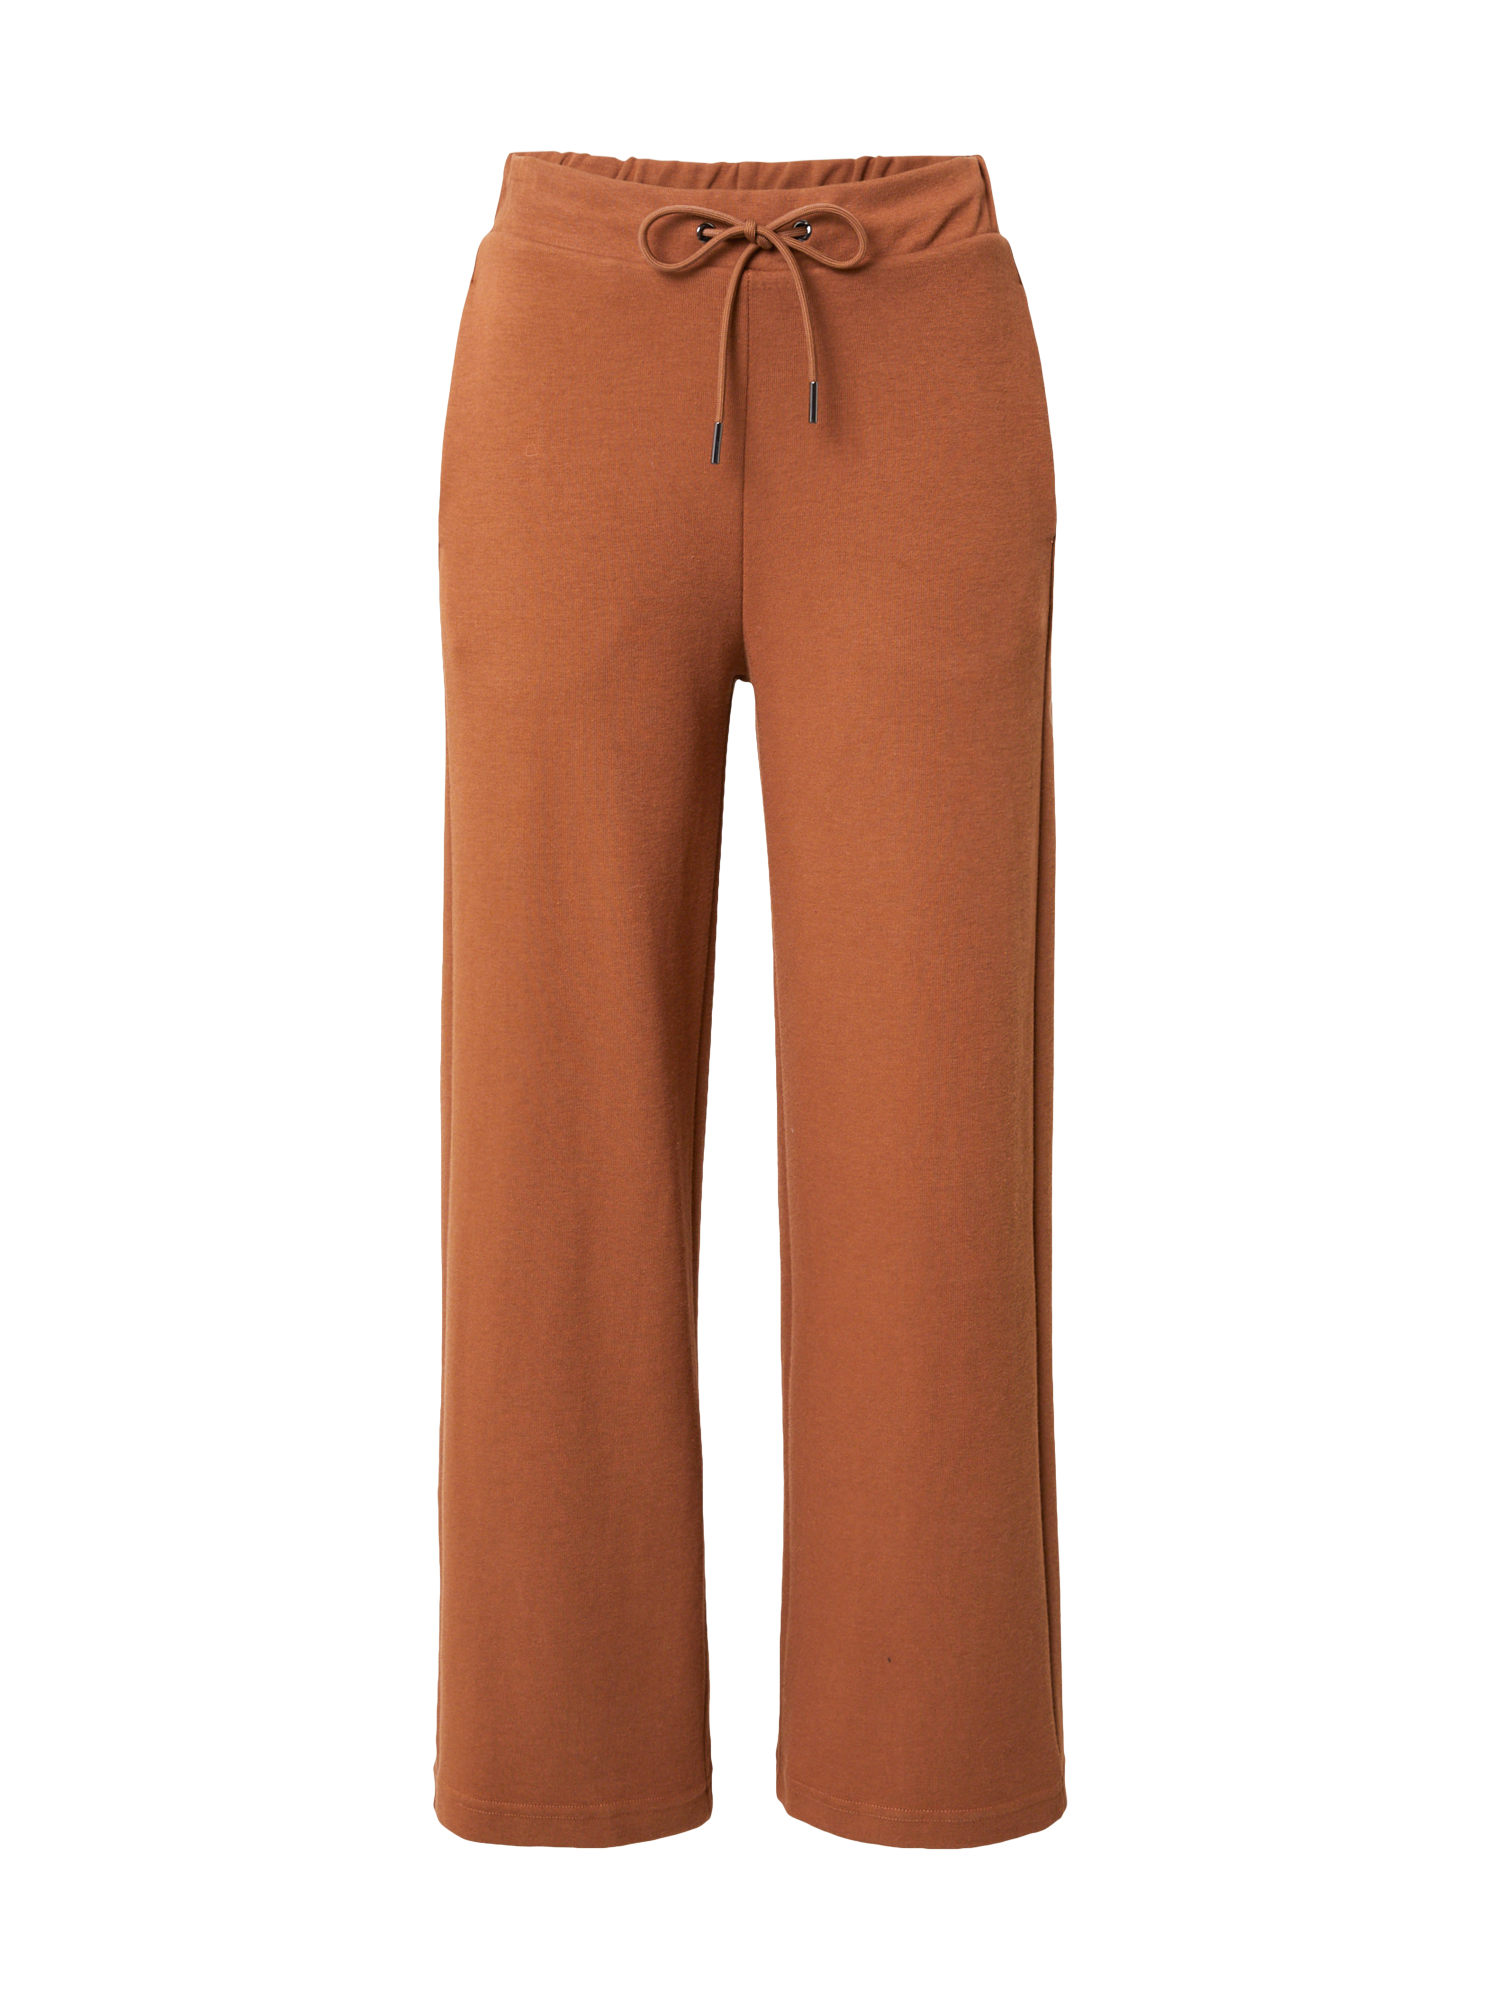 UNITED COLORS OF BENETTON Spodnie w kolorze Koniakowym 